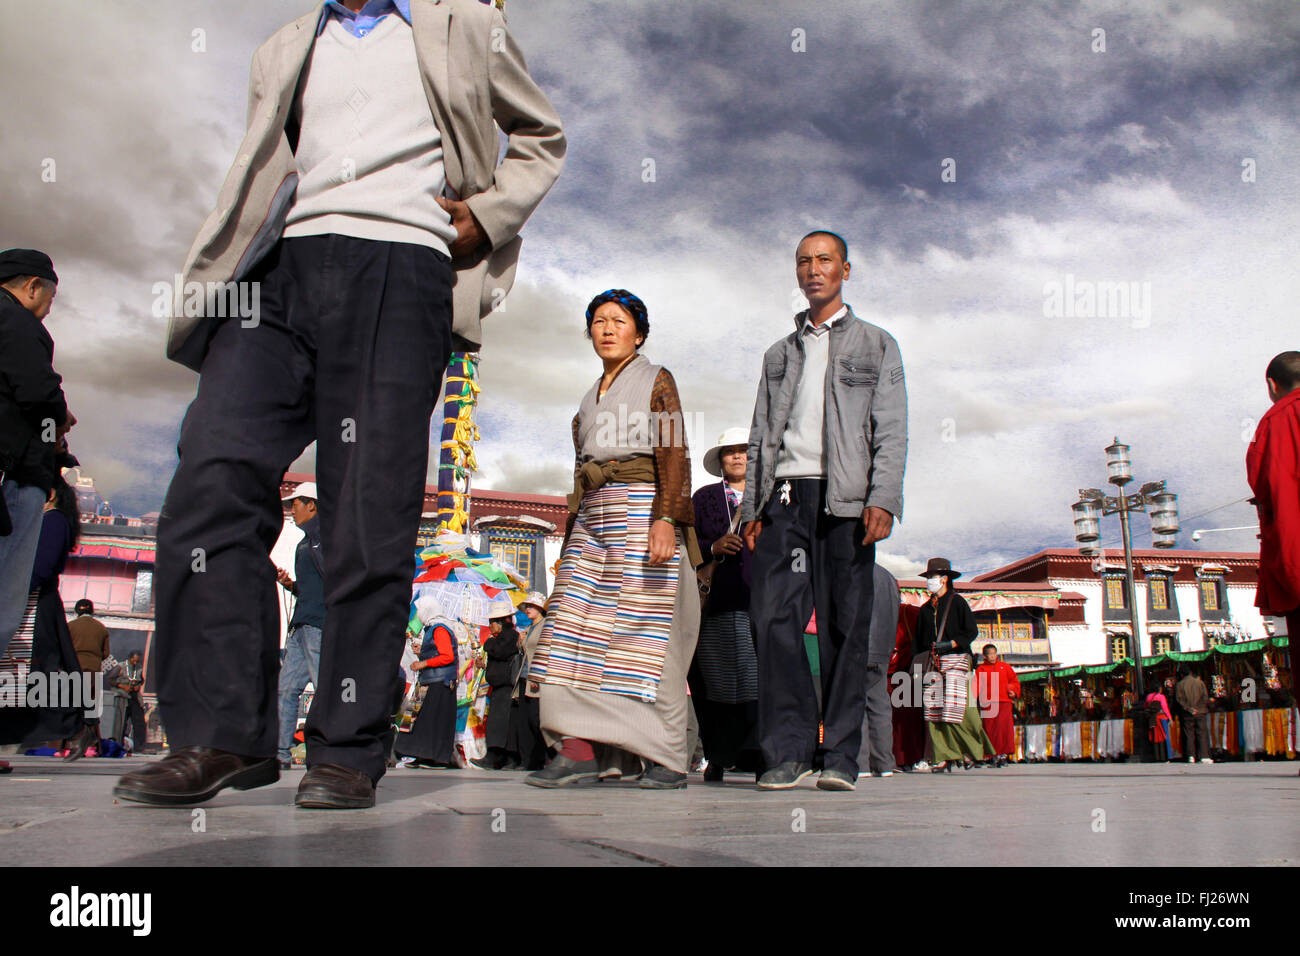 people praying in Lhasa, Tibet Stock Photo